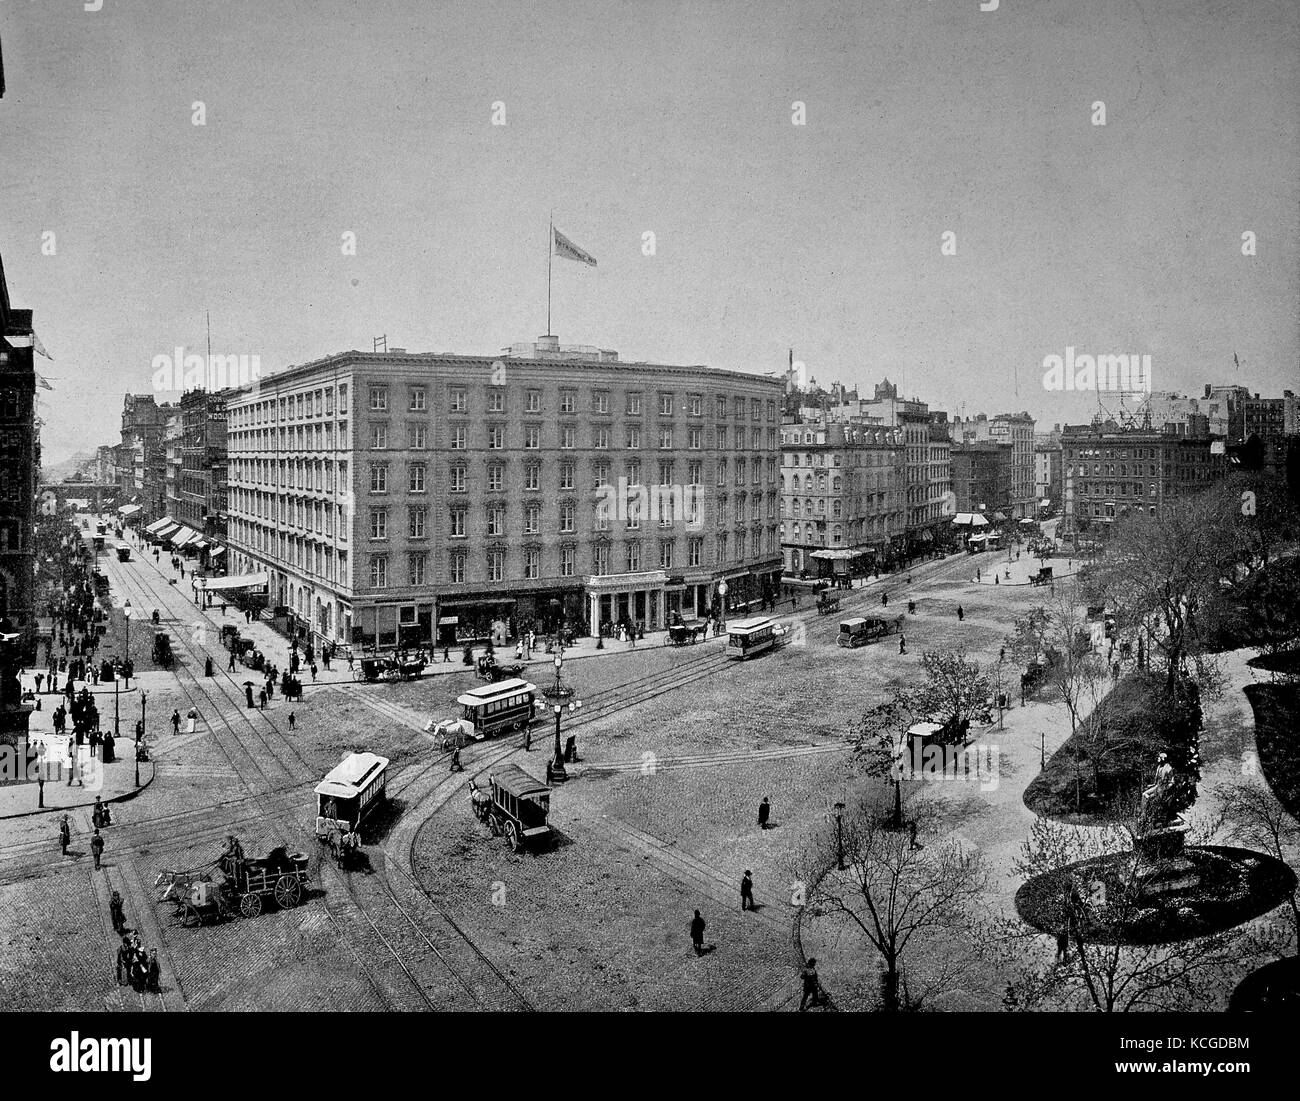 Vereinigte Staaten von Amerika, Gebäude und pferdewagen an der Kreuzung der 5. Avenue und der 23. Straße im Zentrum von New York, digital verbesserte Reproduktion einer historischen Foto aus dem (geschätzten) Jahr 1899 Stockfoto